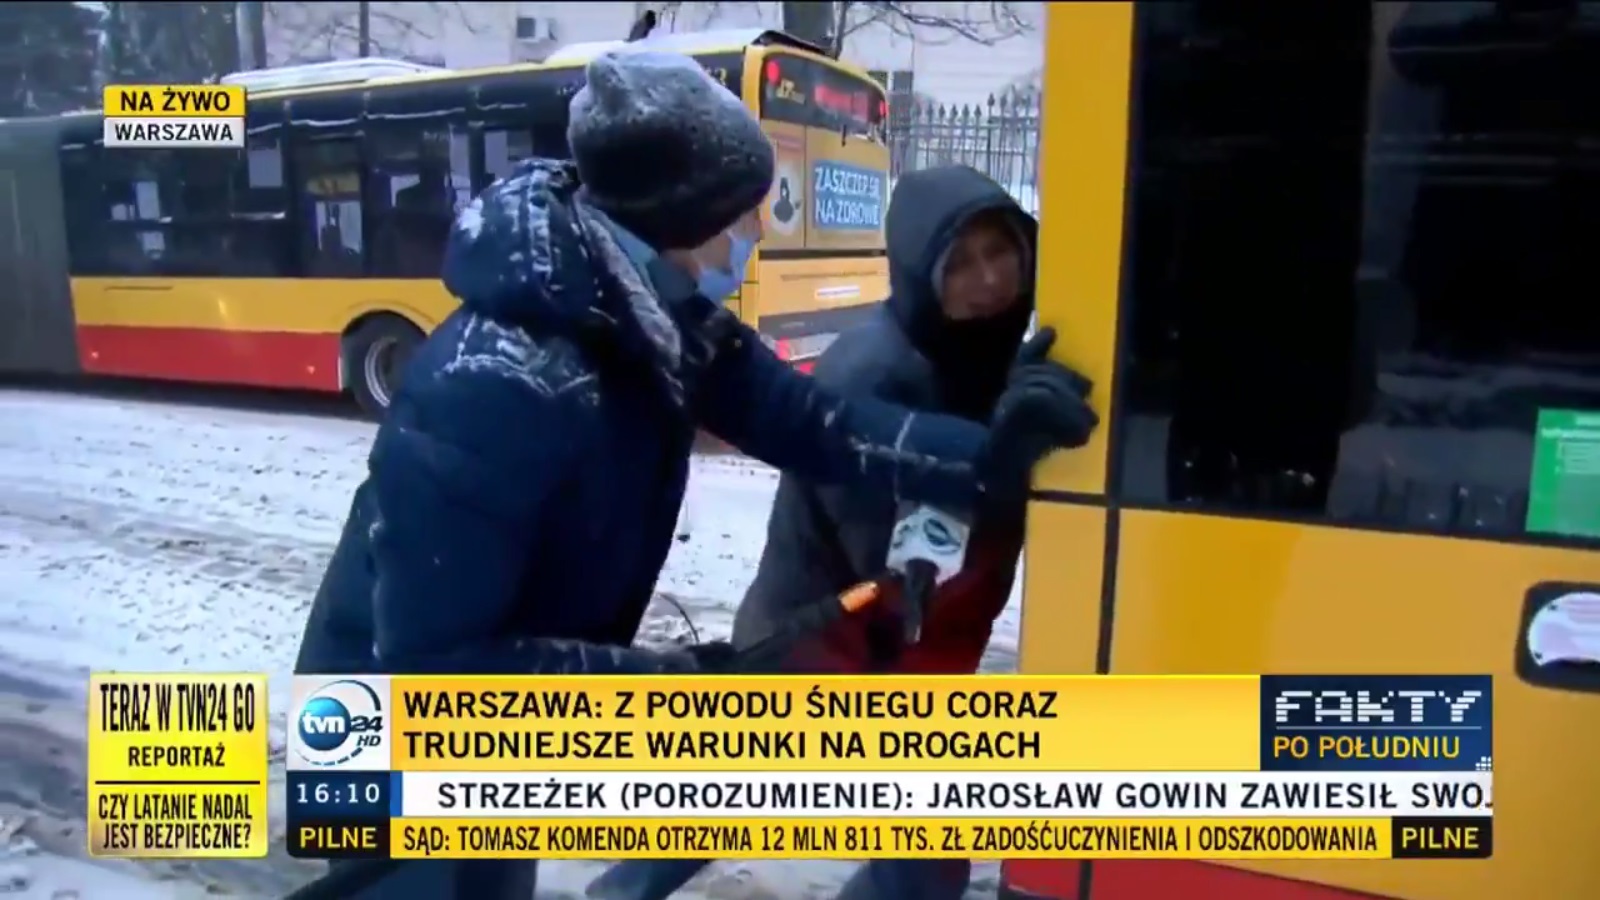 Білорус у Варшаві допоміг виштовхати зі снігу автобус. Тепер він – герой ЗМІ